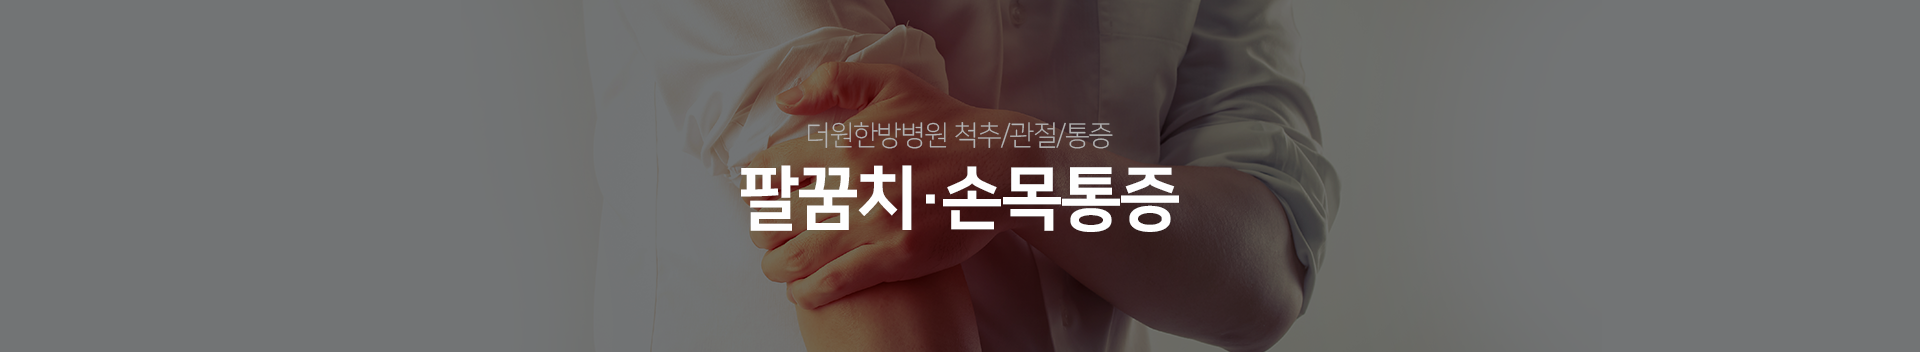 더원한방병원-척추/관절/통증-팔꿈치/손목-통증